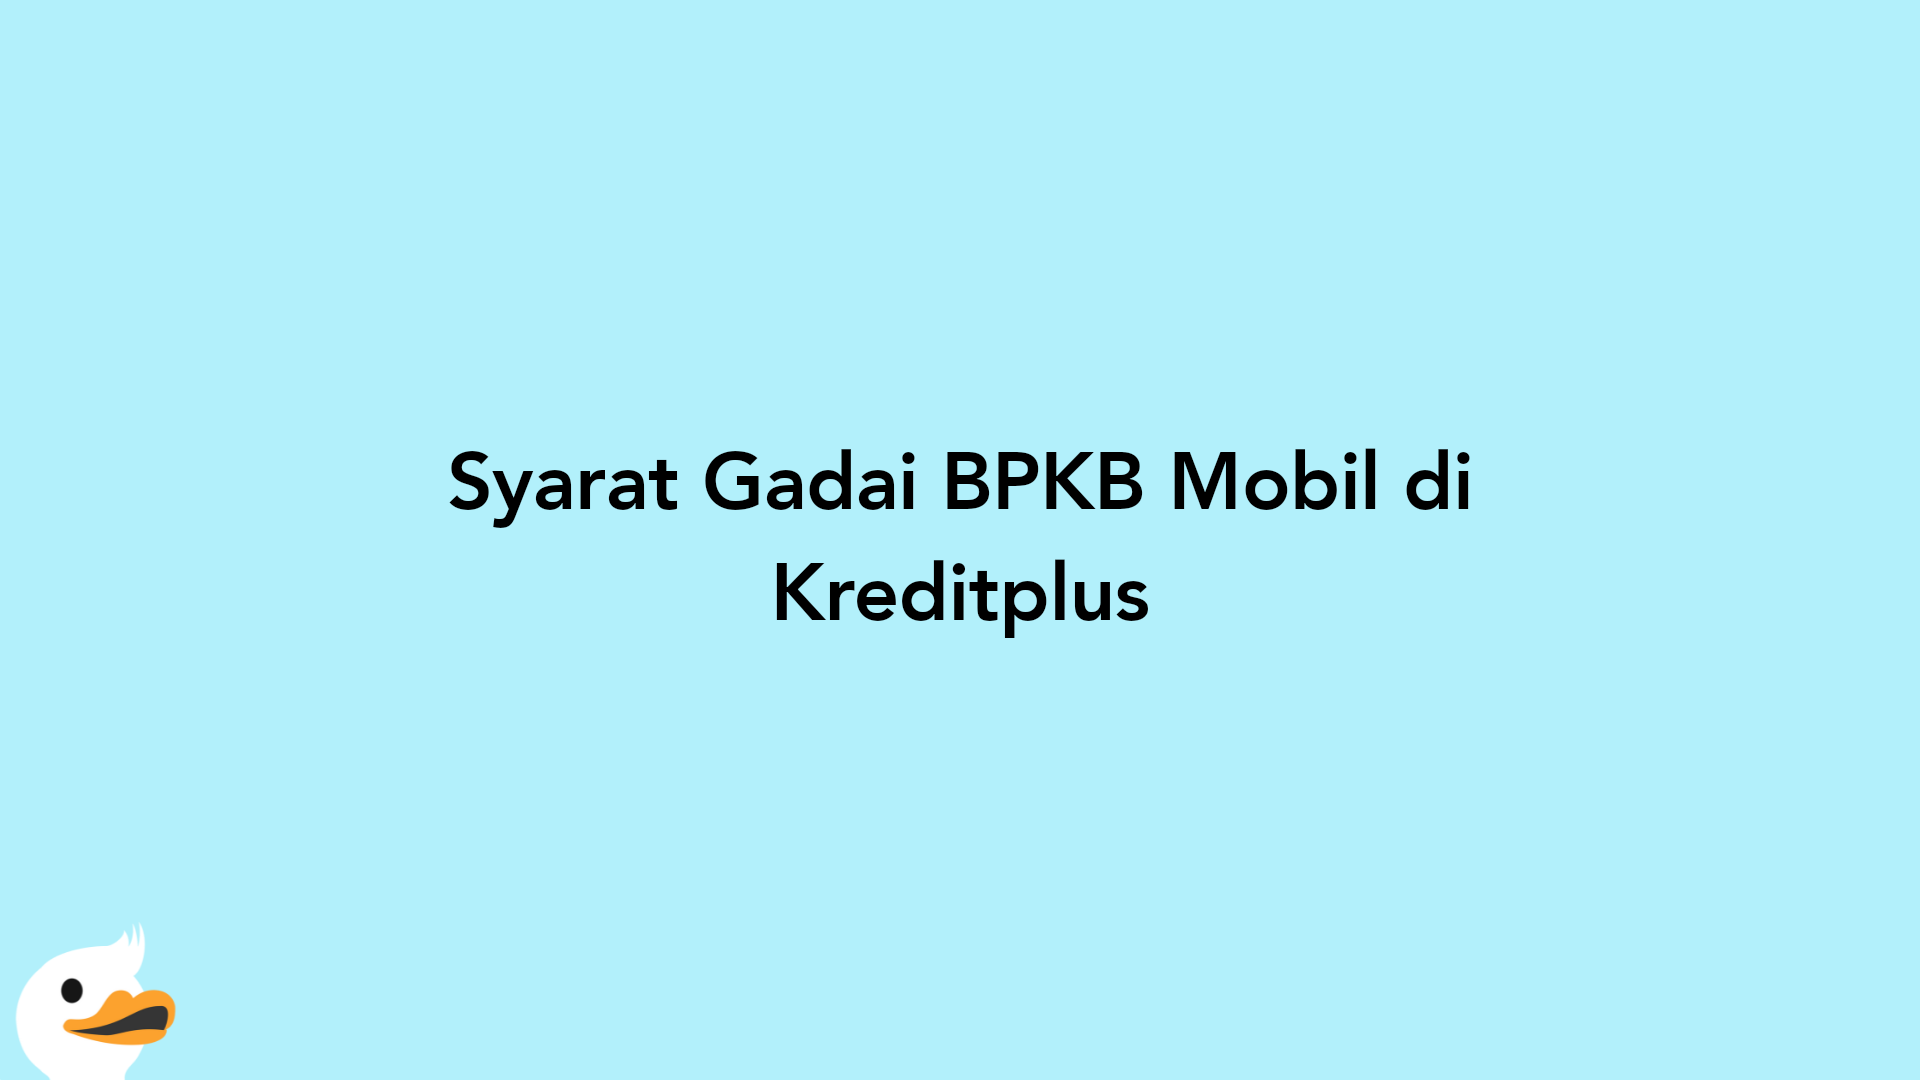 Syarat Gadai BPKB Mobil di Kreditplus